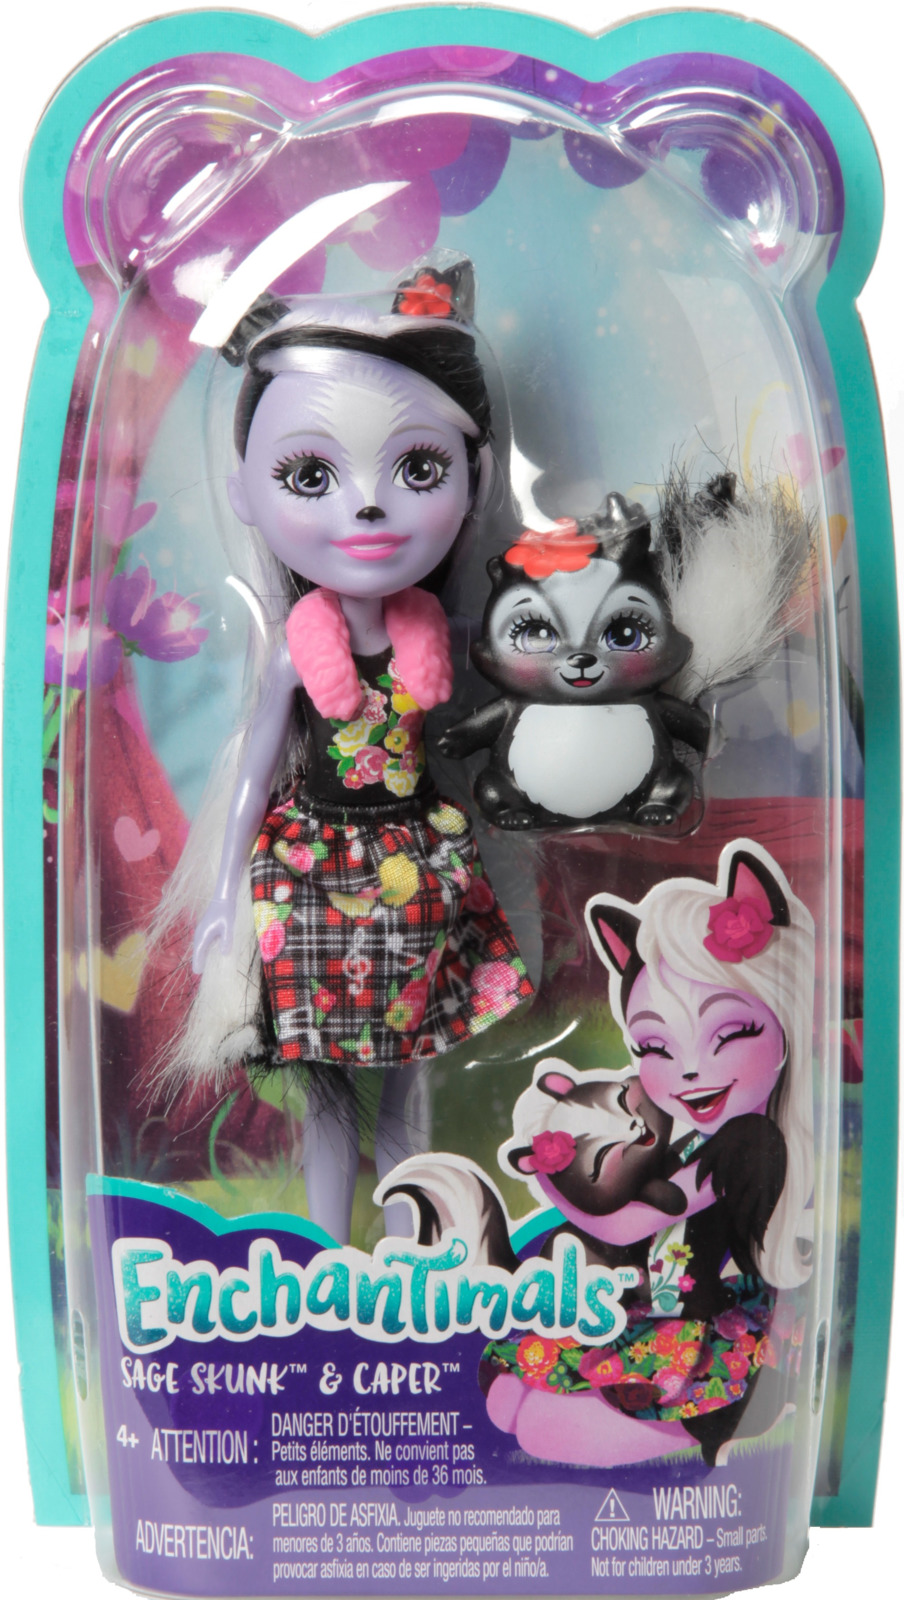 Кукла Скунси Седж с питомцем скунсом Кейпер 15см Enchantimals Mattel FXM72